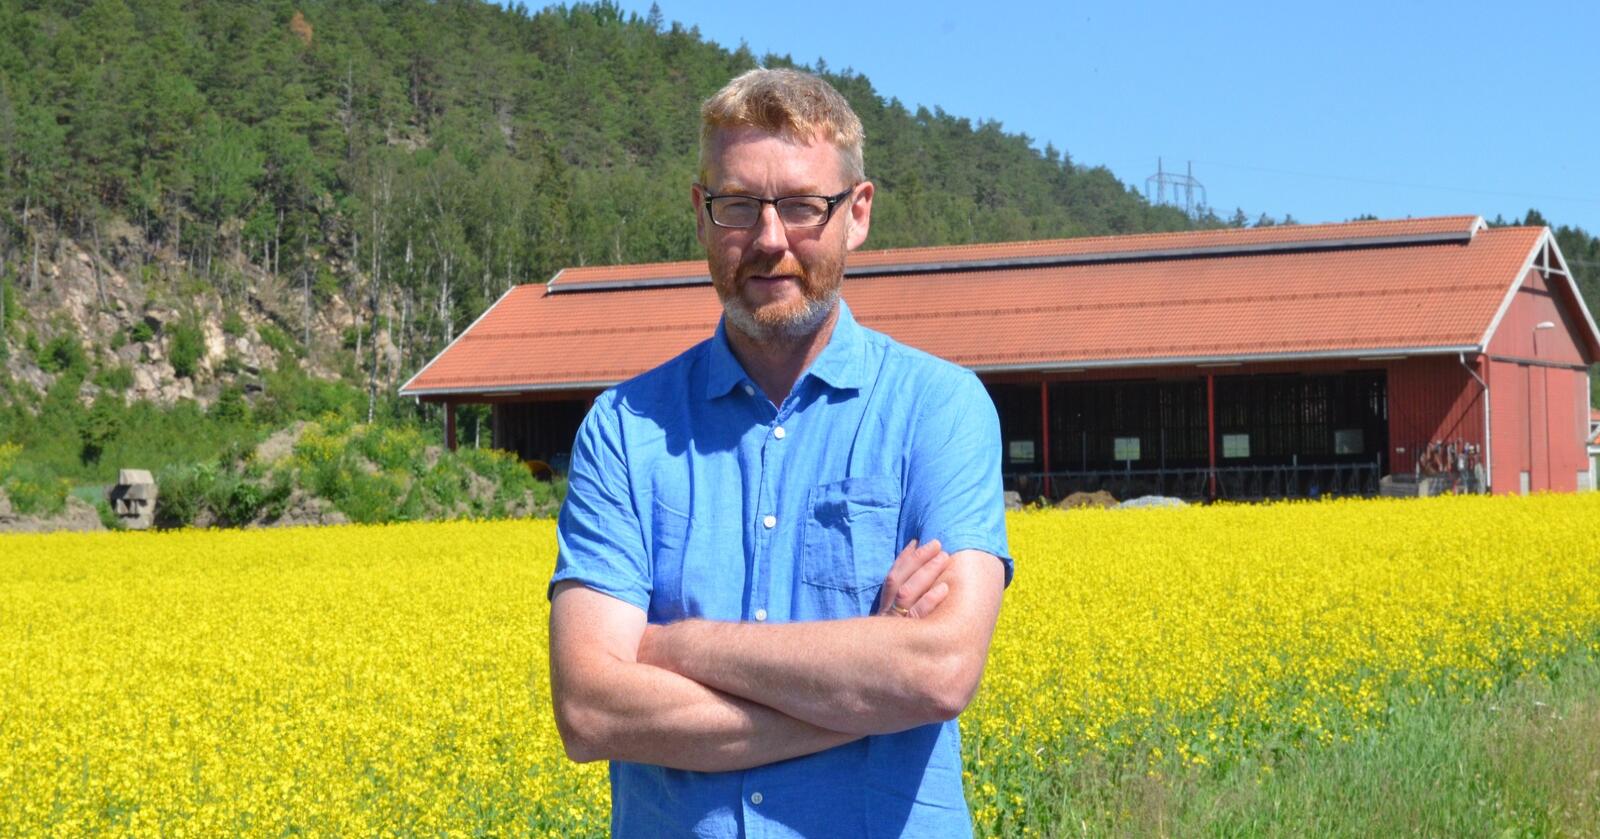 Korn- og ammekubonden Bjørn Gimming er ny leder i Norges Bondelag. Gården hans ligger i Halden. Han dyrker også en god del raps. (Foto: Stian Eide)